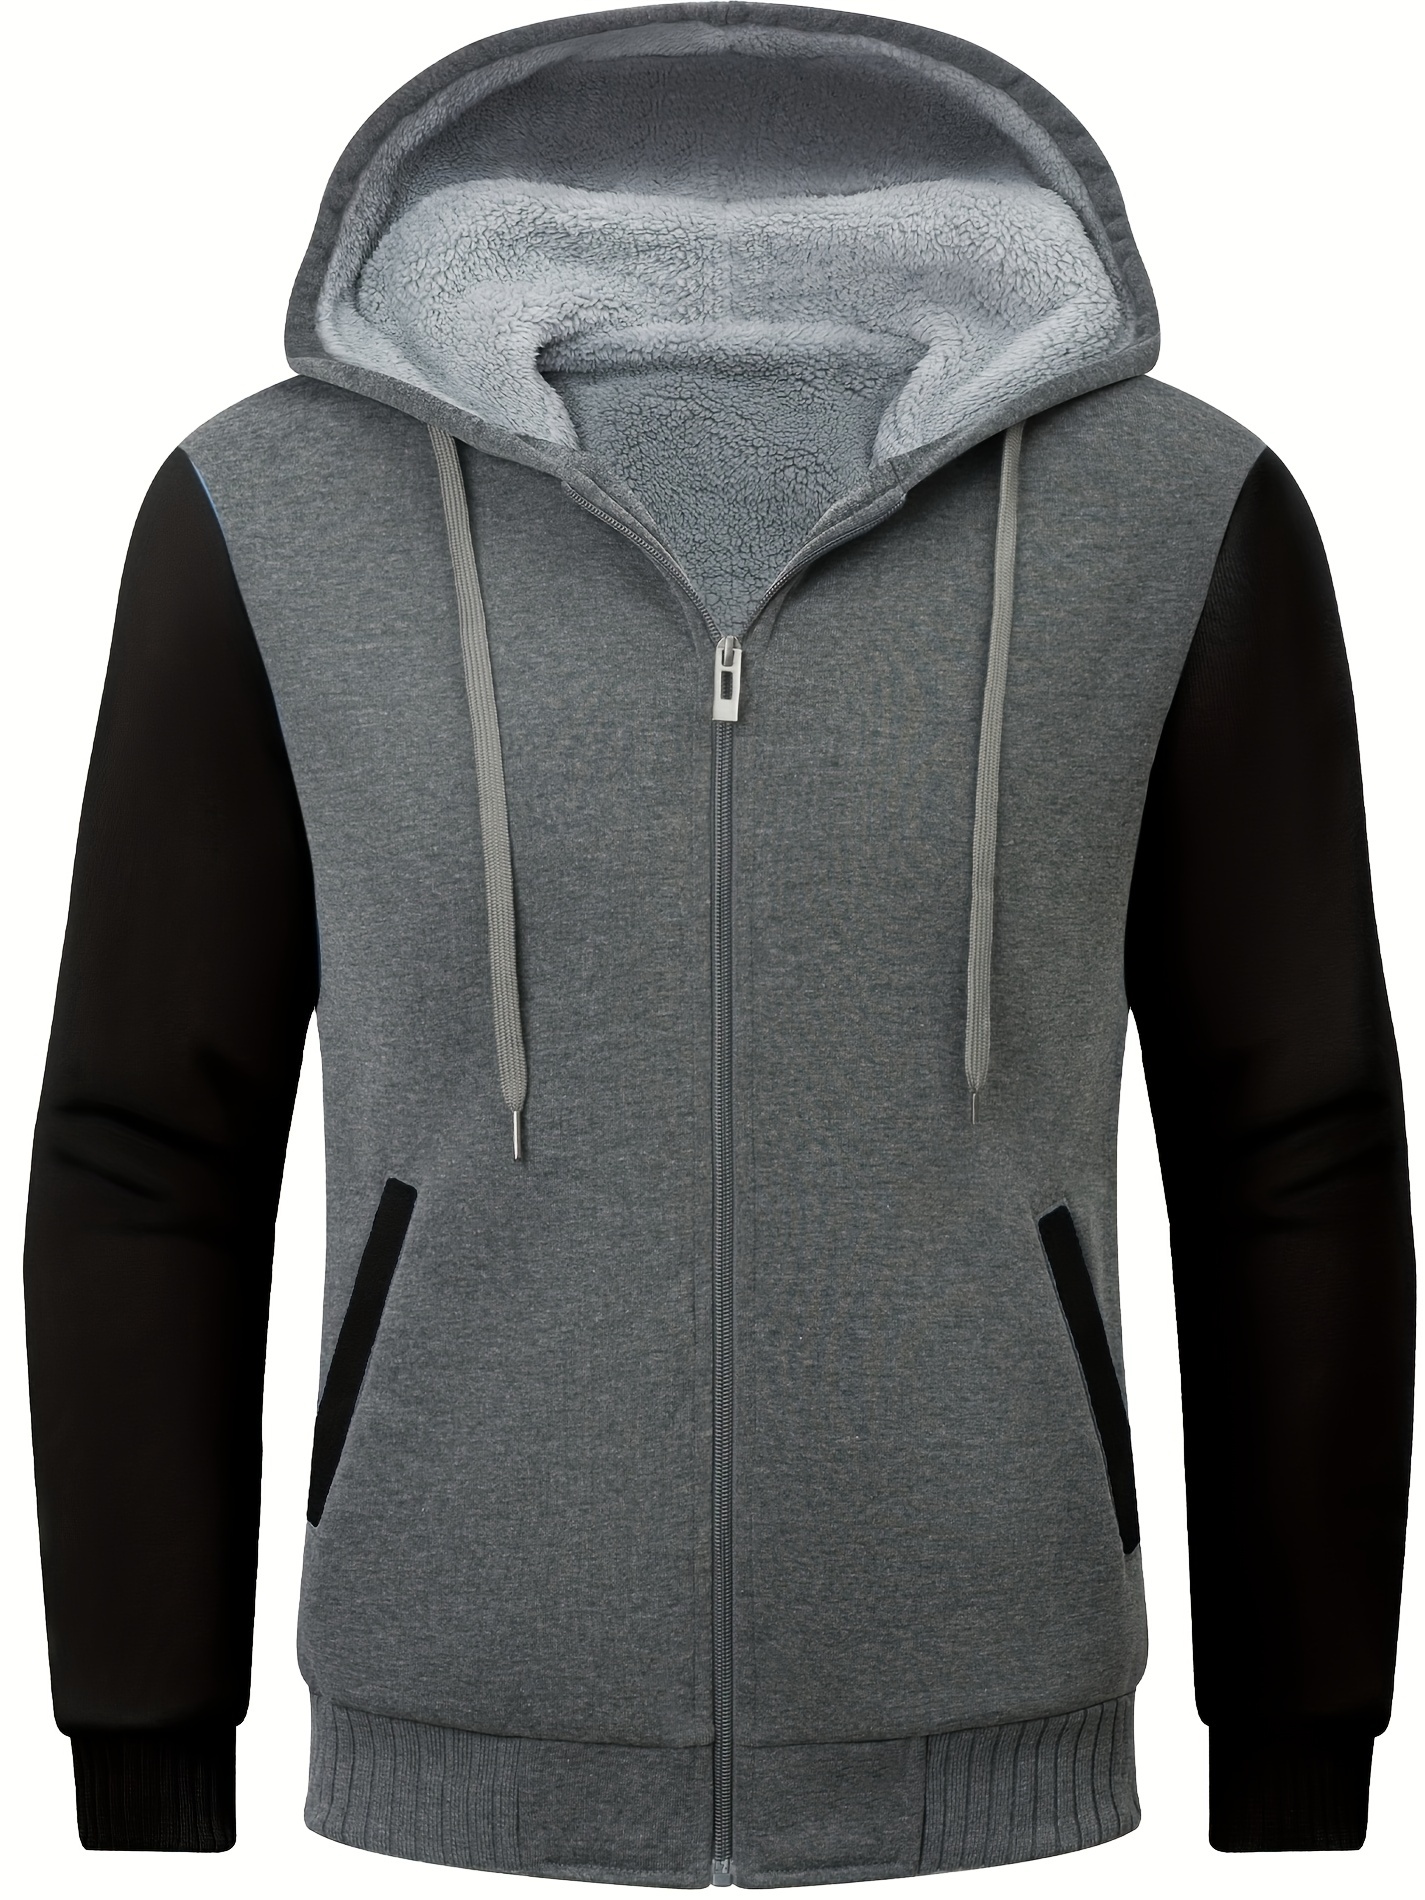 Buy Hoodies for Men Full Zip Up Fleece Warm Jackets Thick Coats